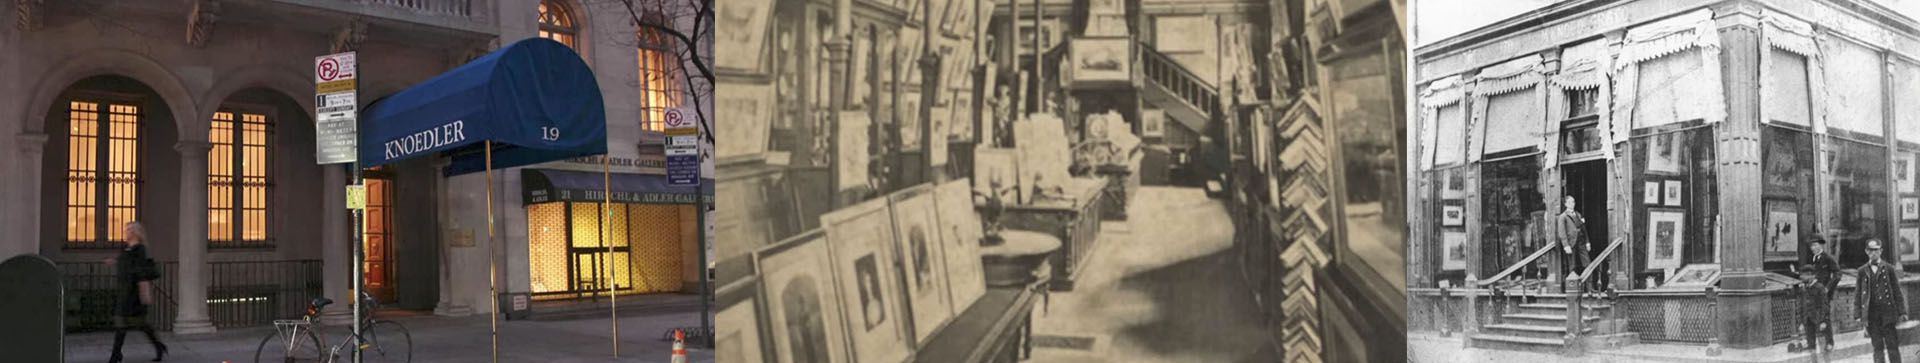 La Galeria Knoedler de Nueva York sobrevivió a grandes crisis económicas, pero no al escándalo de la estafa  